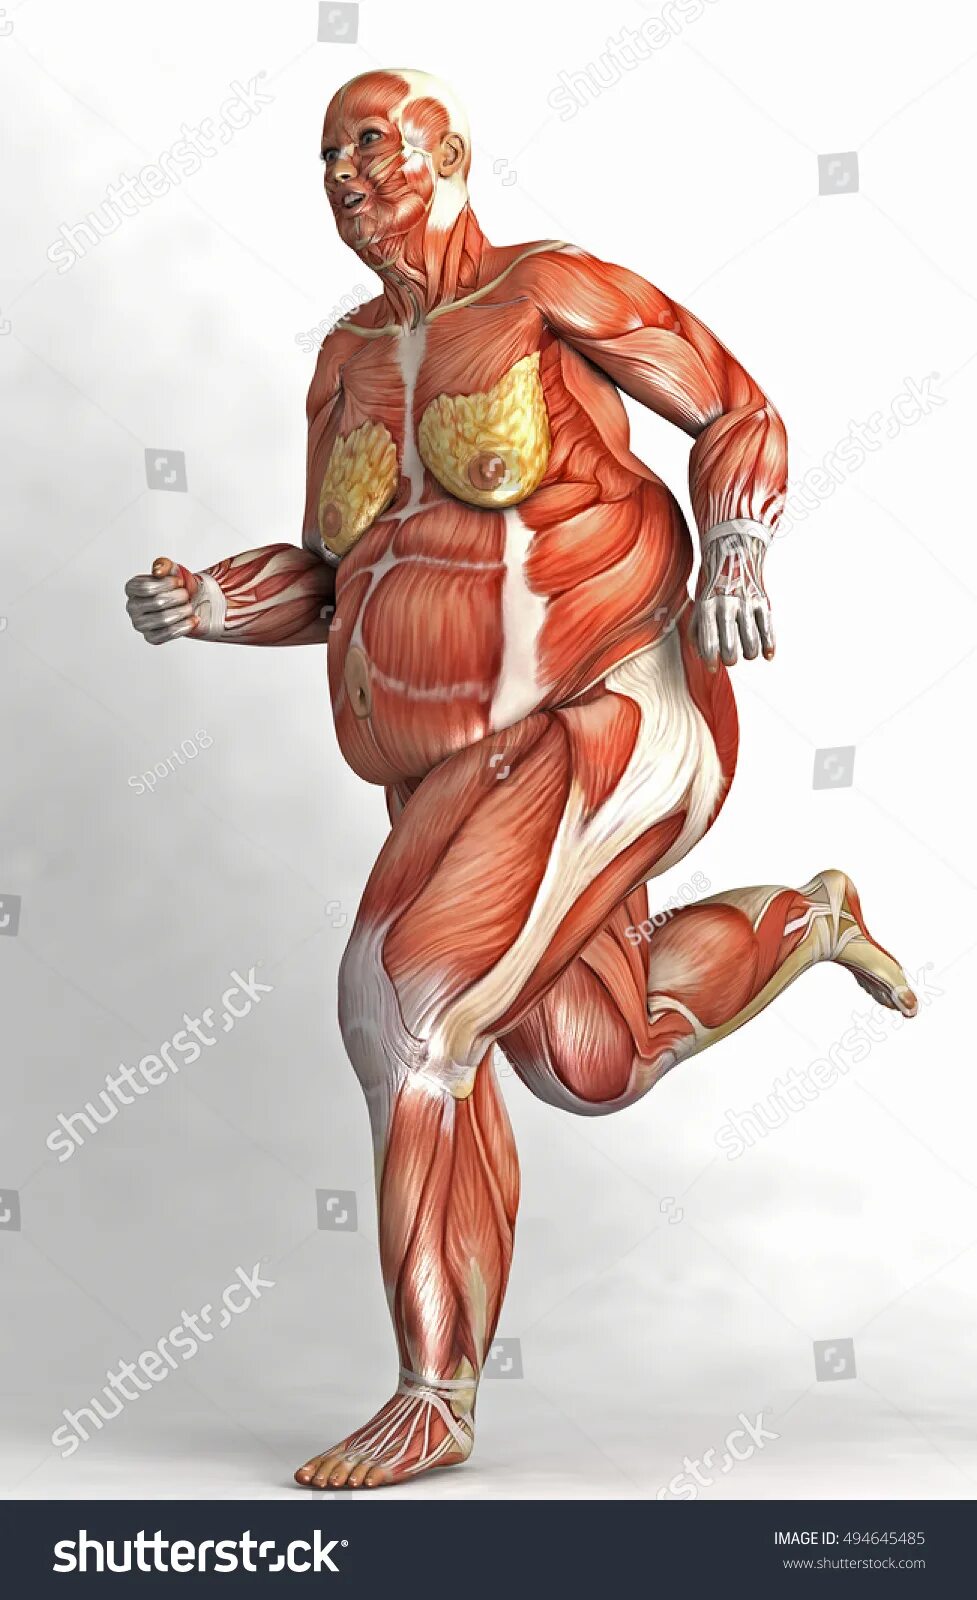 Мышцы человека. Скелет человека с мышцами. Тело человека без кожи и мышц. Мышцы женского тела. Толстый человек анатомия